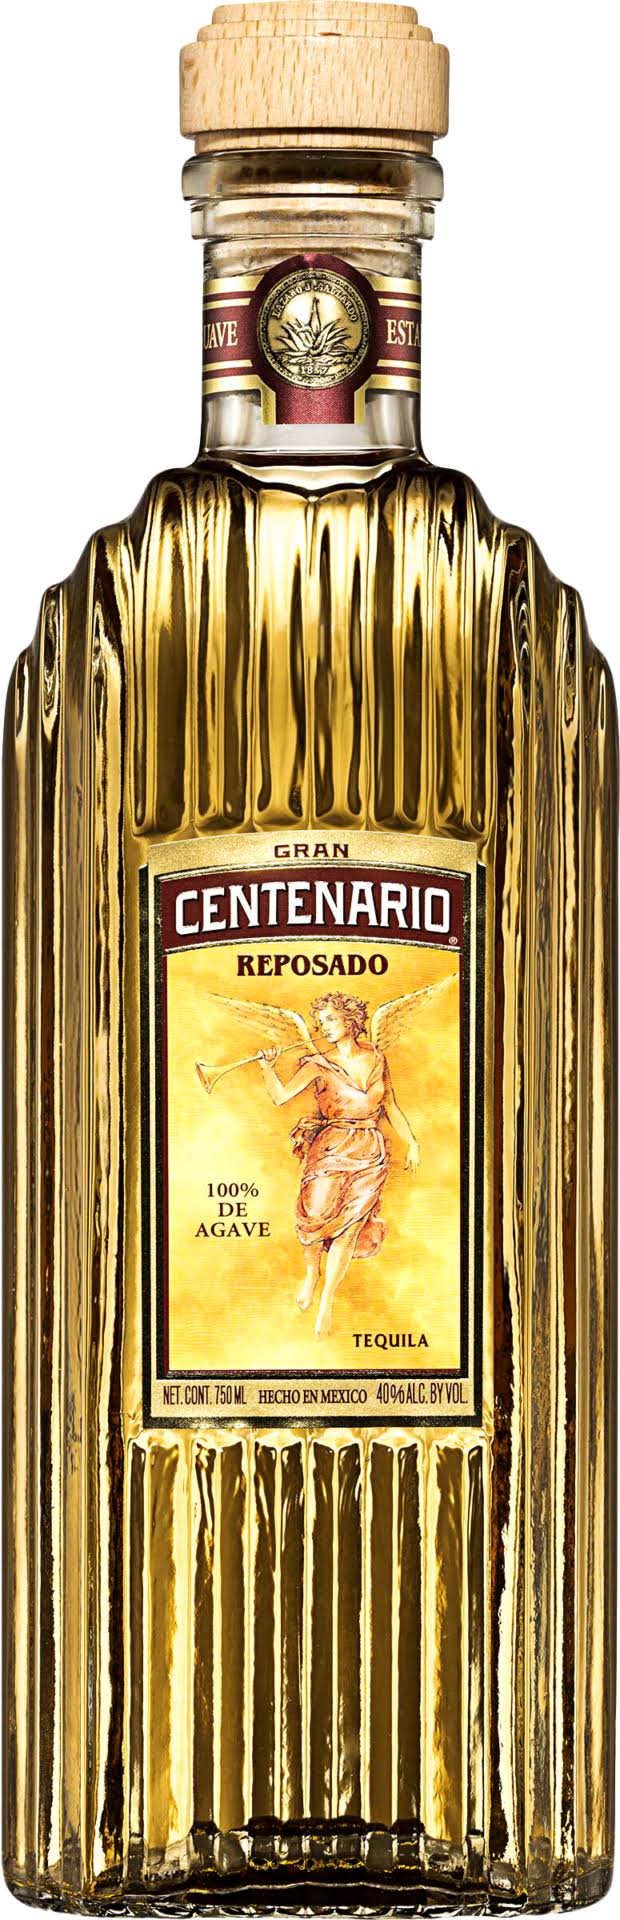 Gran Centenario Reposado Tequila - 750 ml bottle